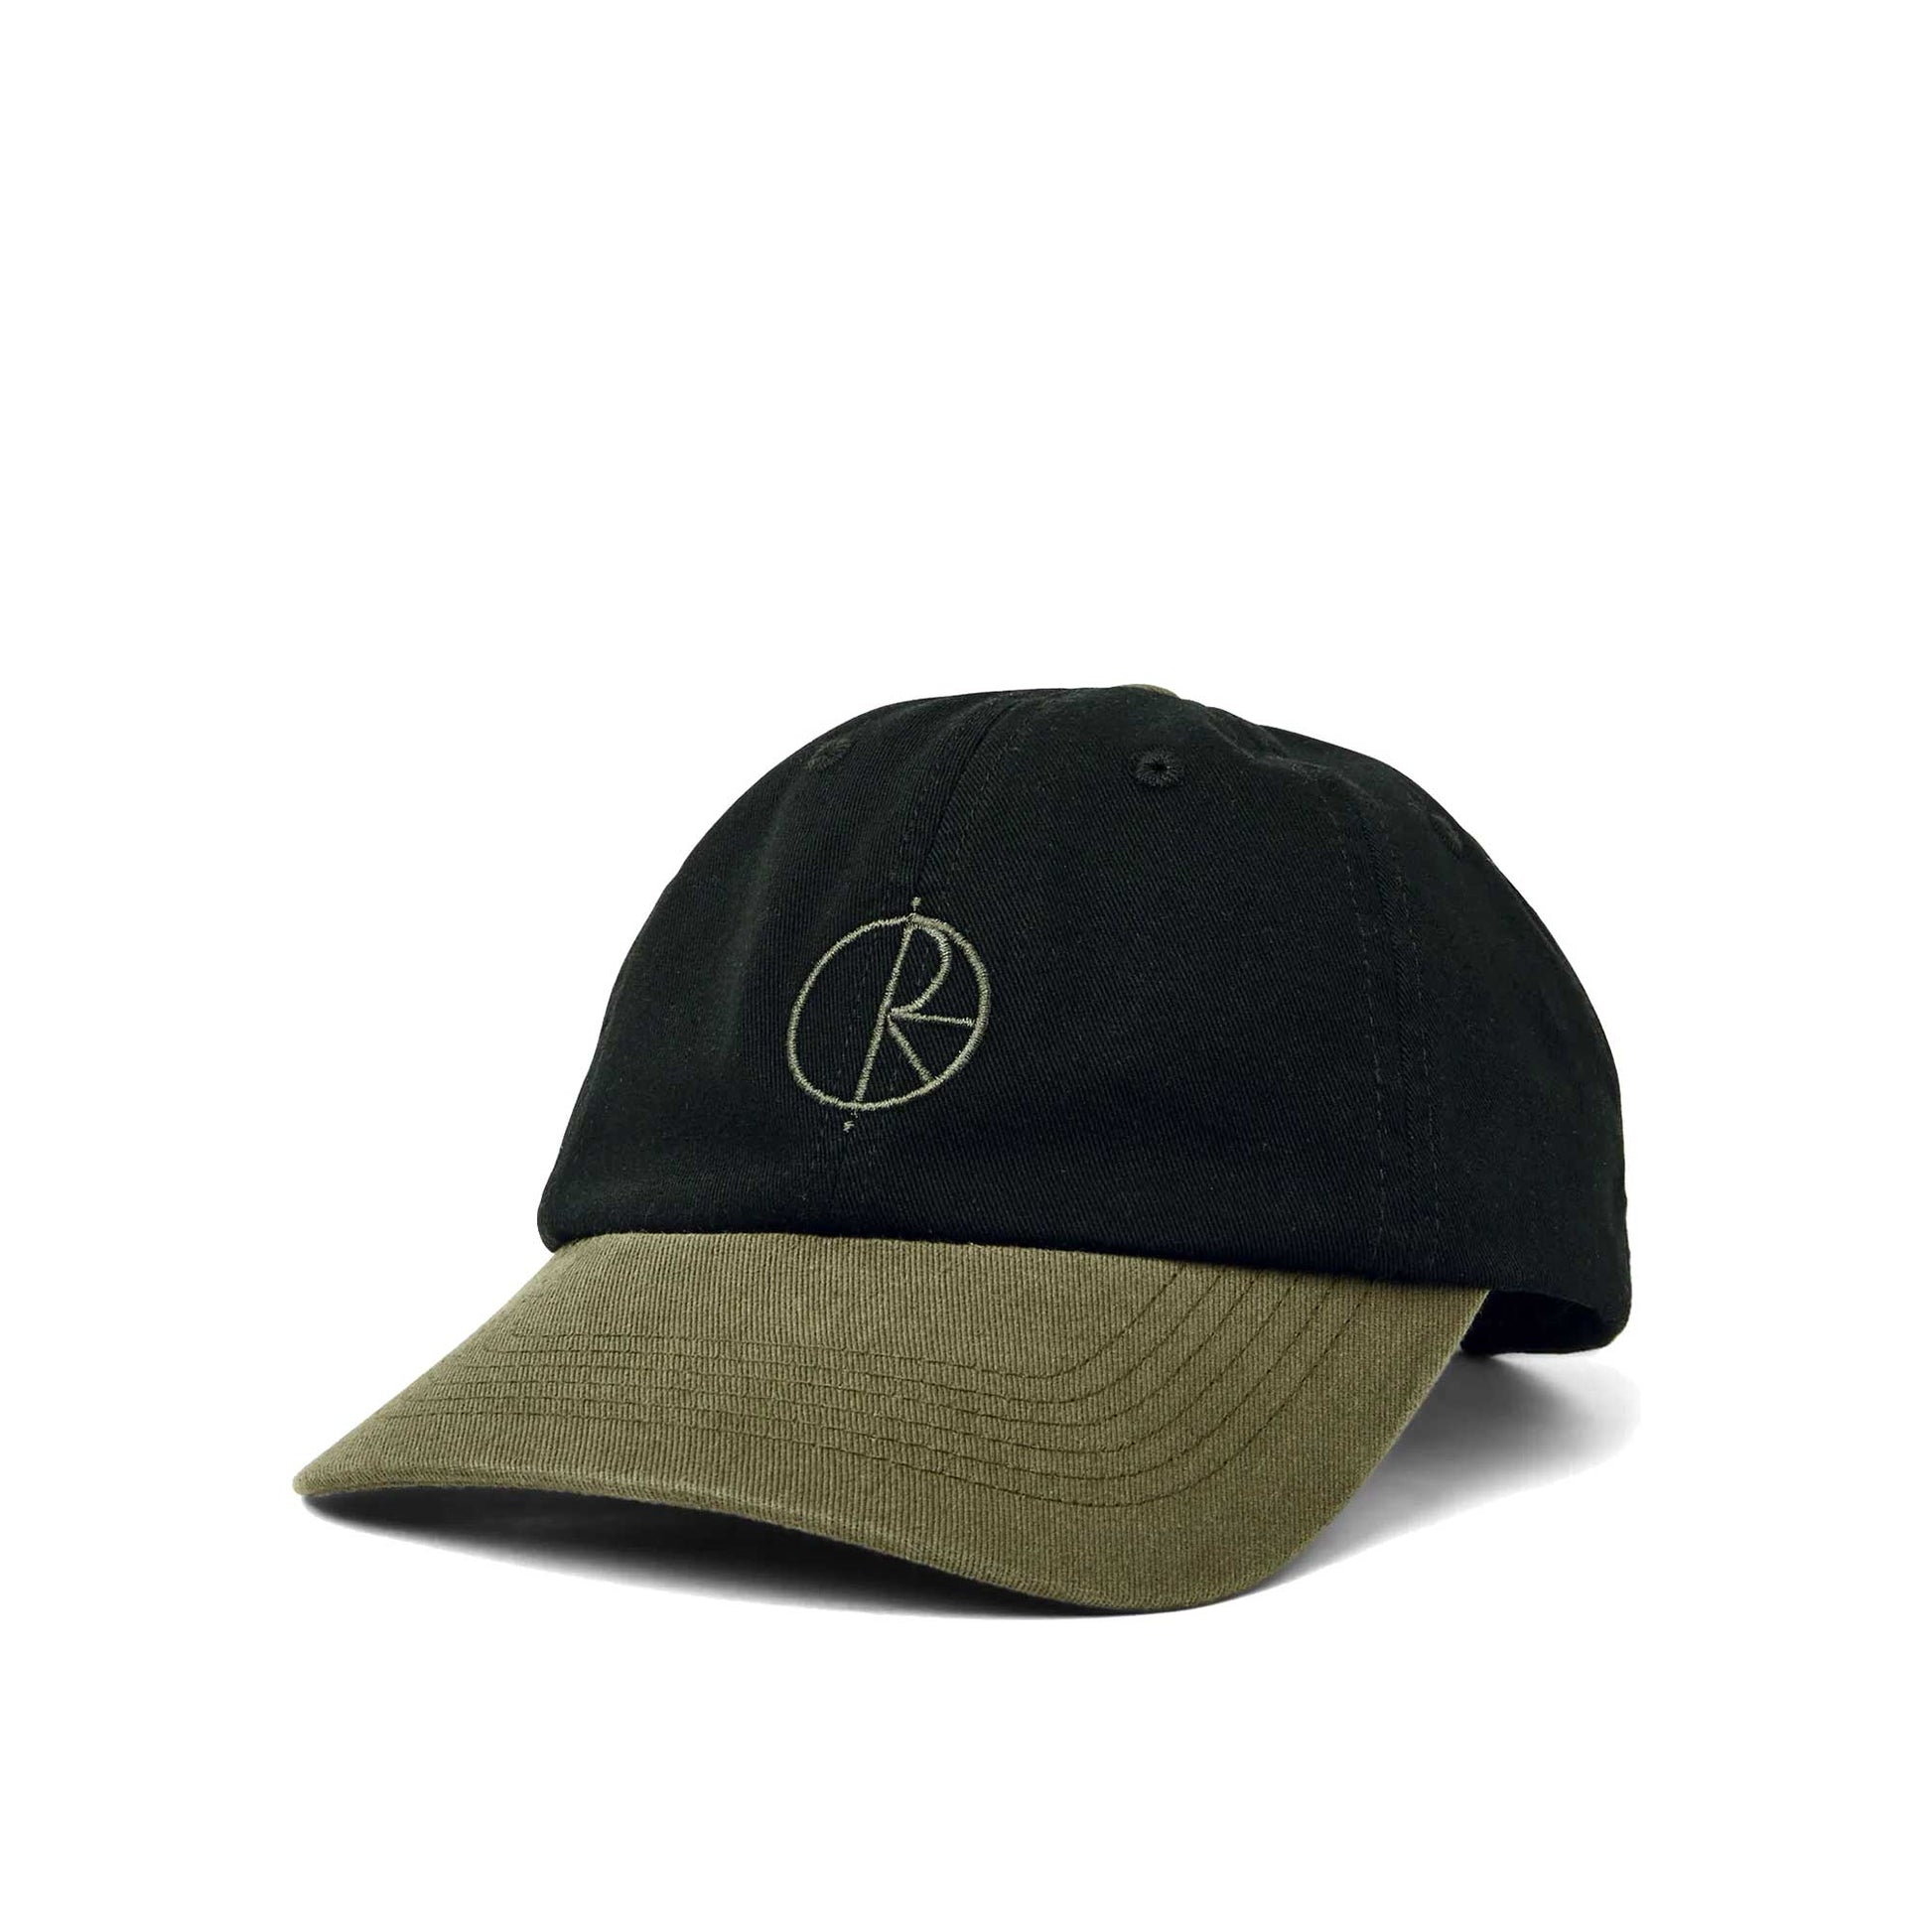 Polar Duo Stroke Logo Cap, black/army green - Tiki Room Skateboards - 1